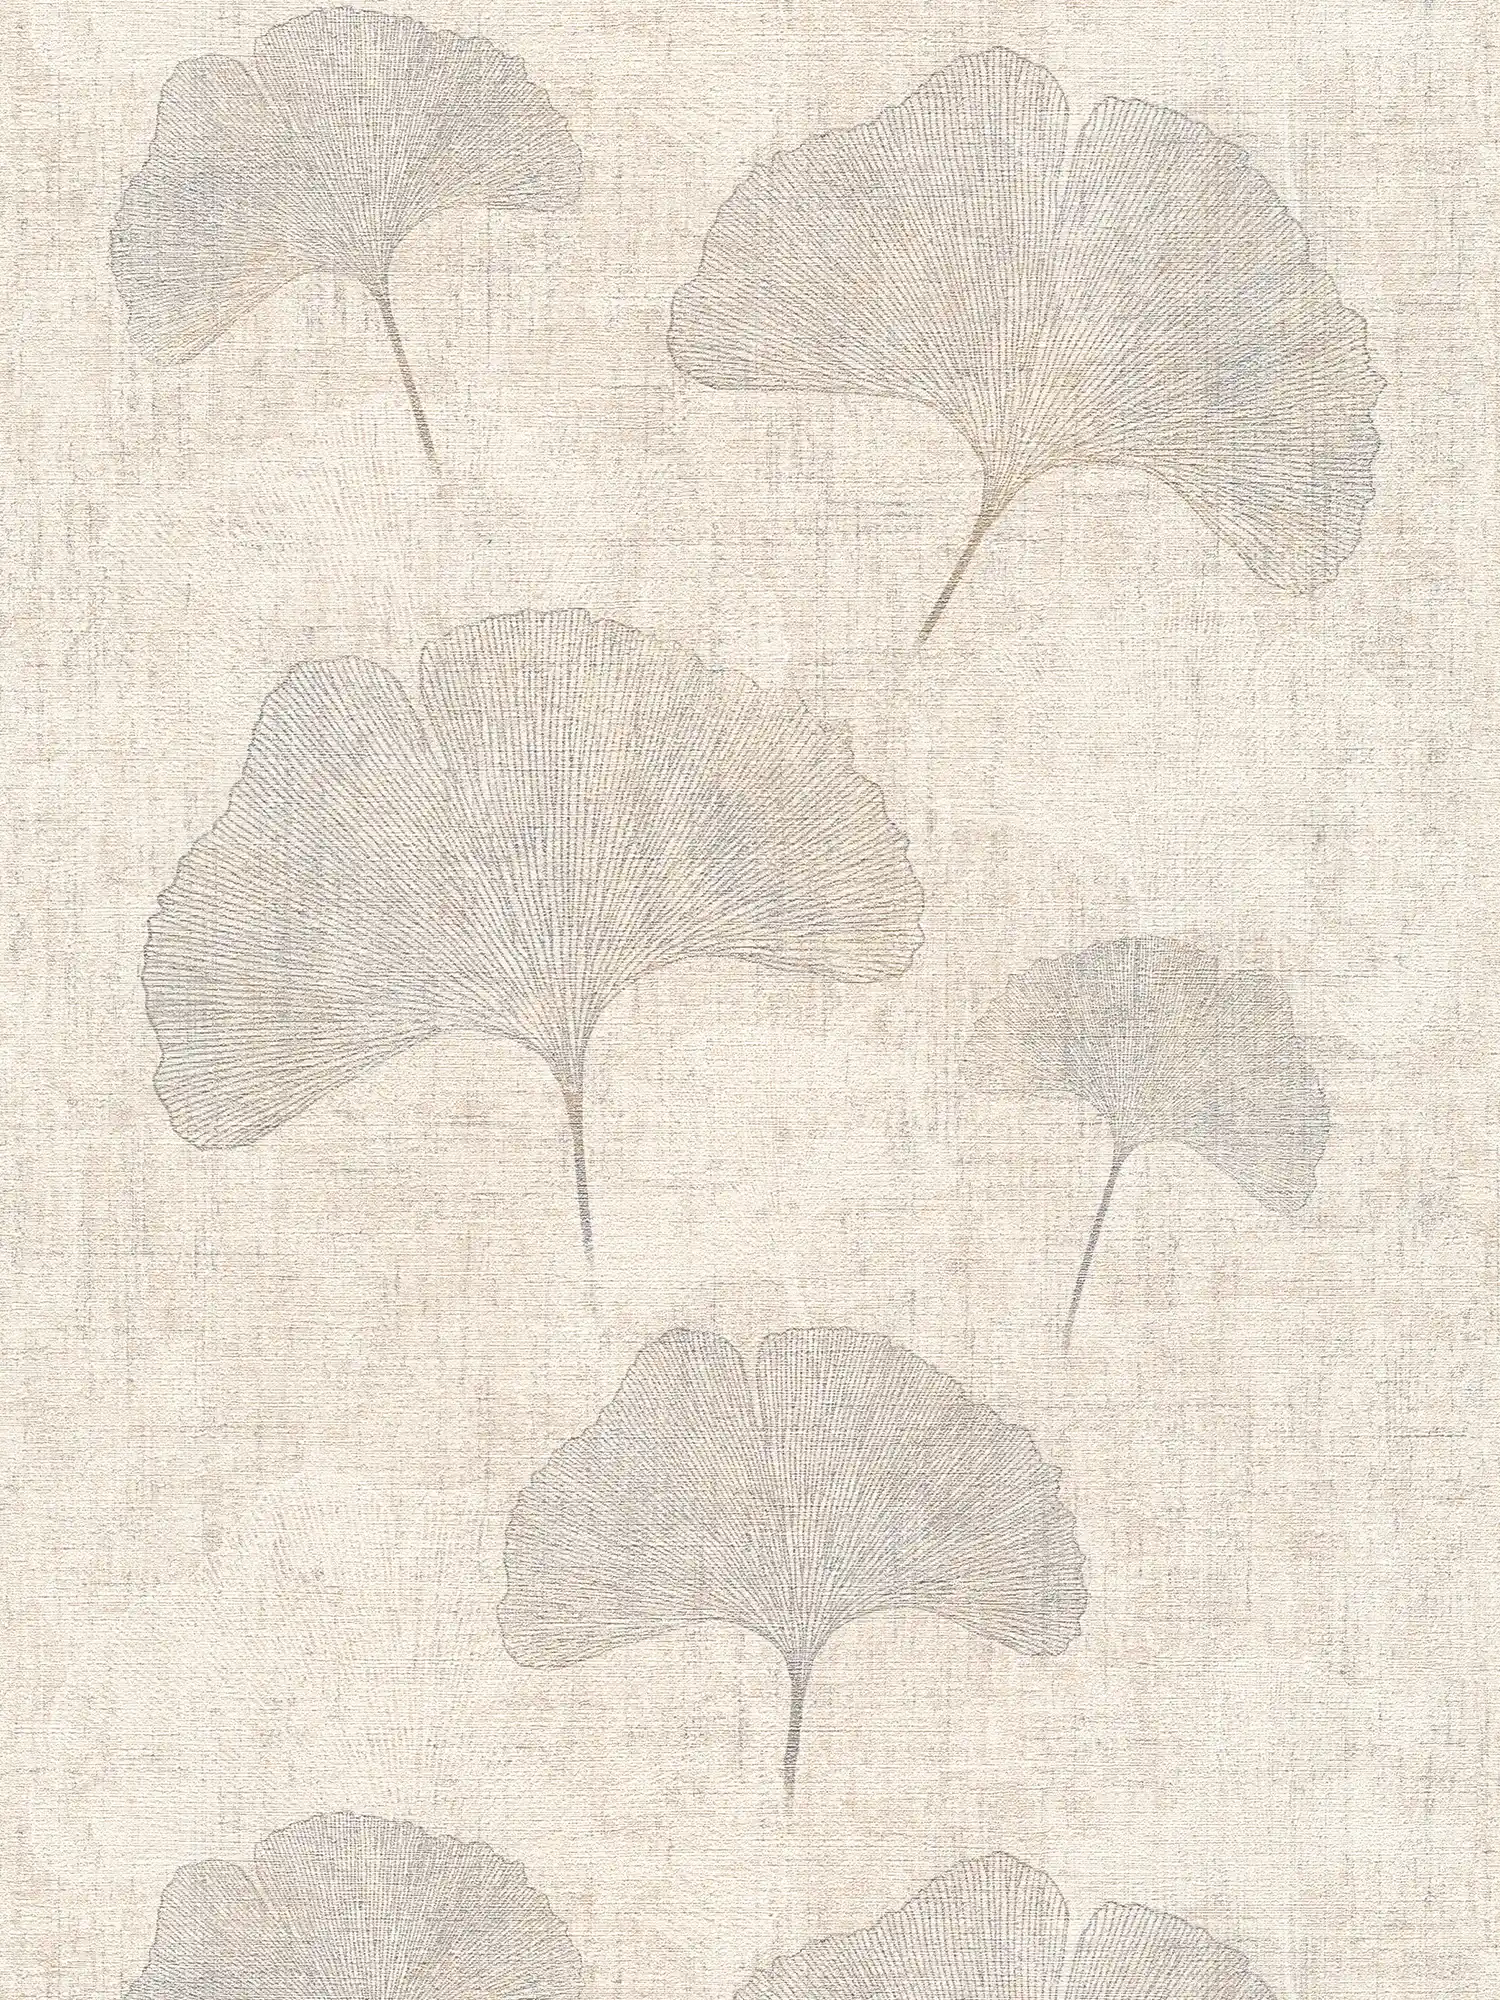 papel pintado hojas de ginko efecto metálico, aspecto de lino- beige, plata, marrón
